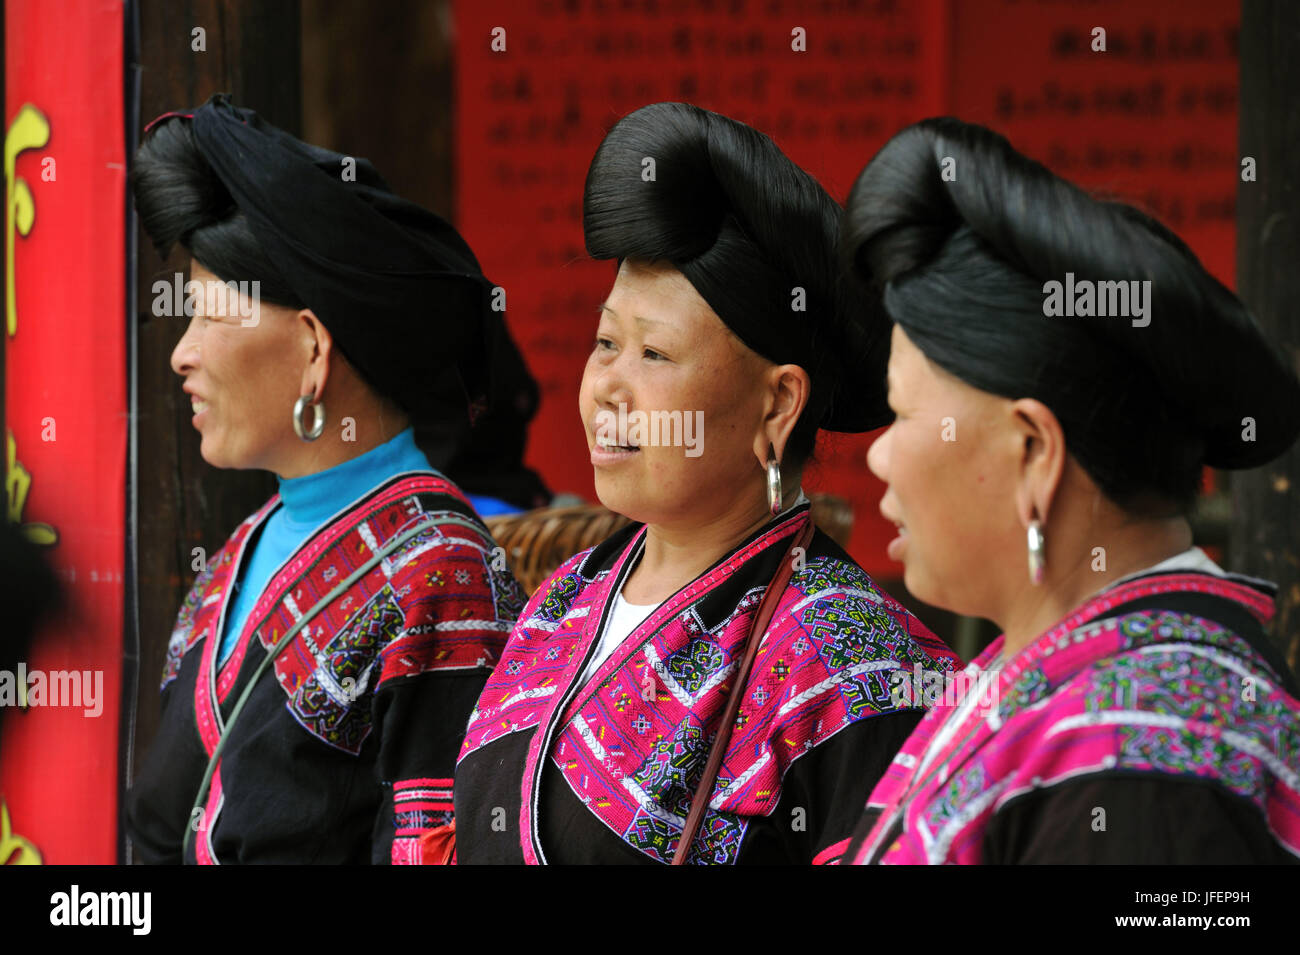 Cina, provincia di Guangxi, aera Longsheng, Dazhai village, rosso minoranza Yao Foto Stock